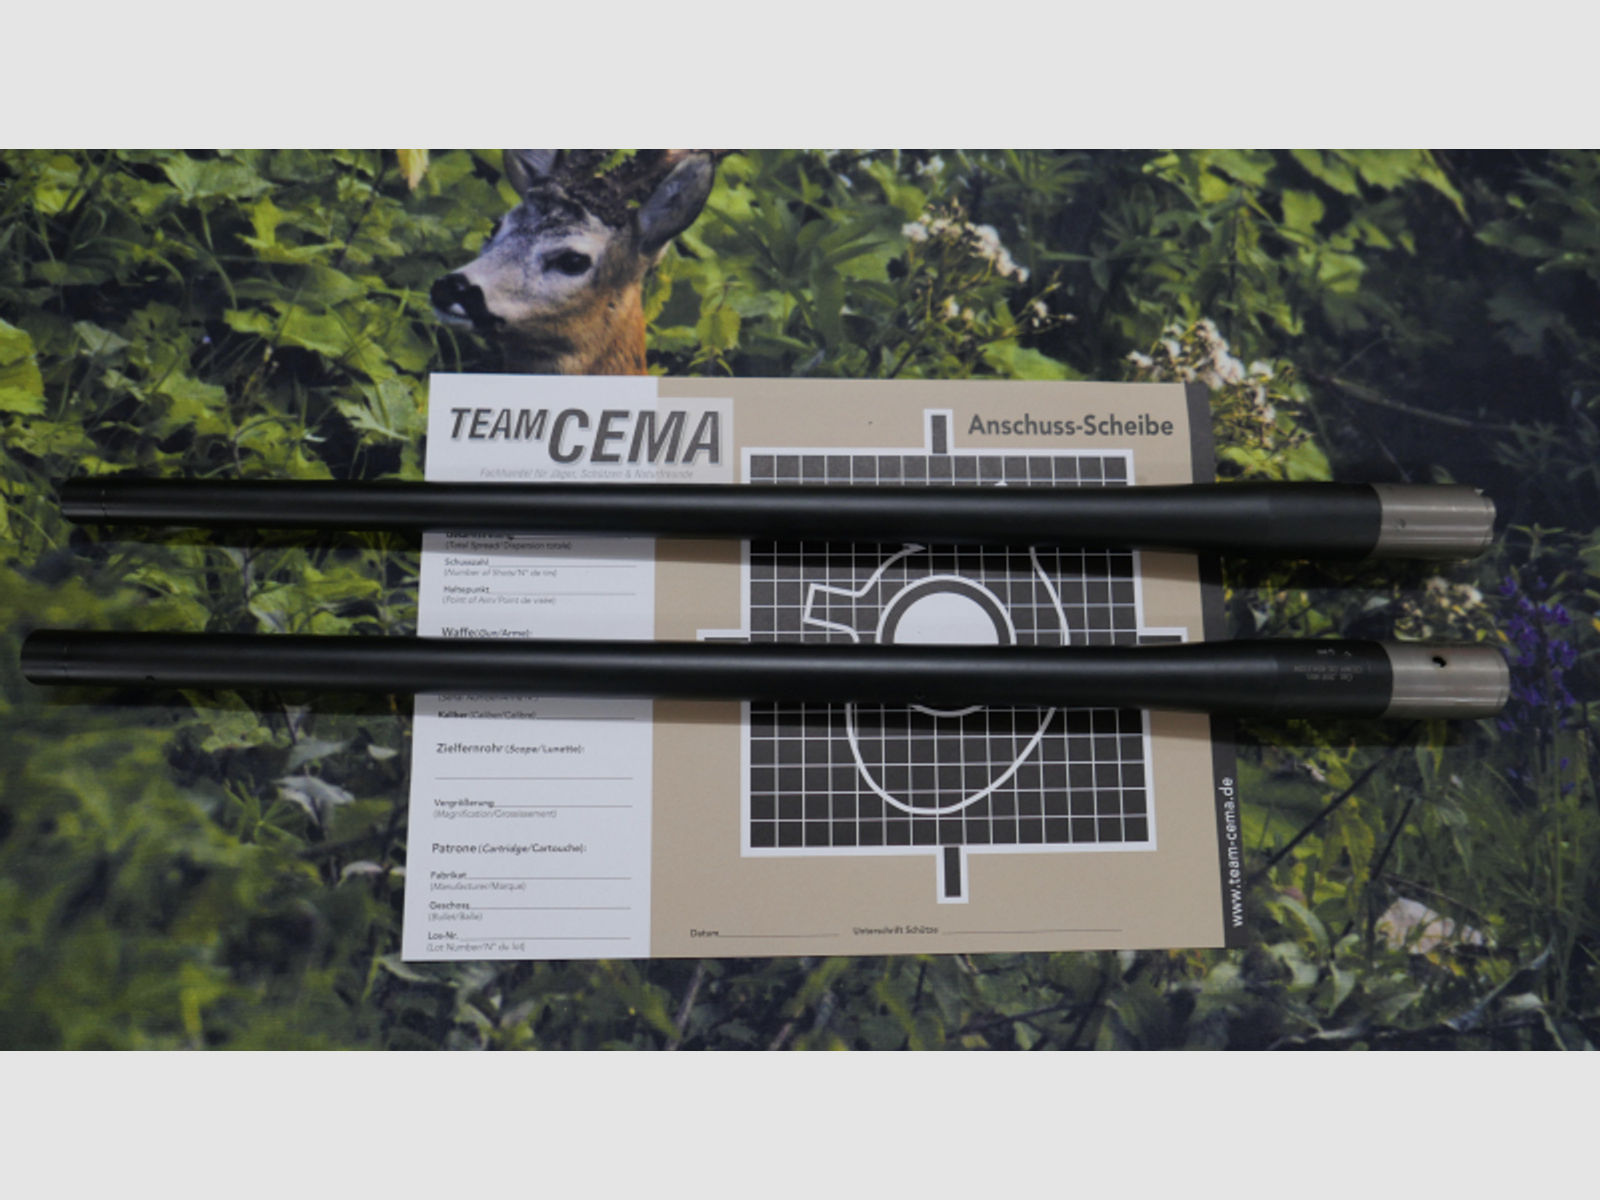 TEAM-CEMA S 02 Wechsellauf-ATL- Sauer 404, cal. 308 Win. semi, M18 oder 15 x1, von TEAM-CEMA.DE